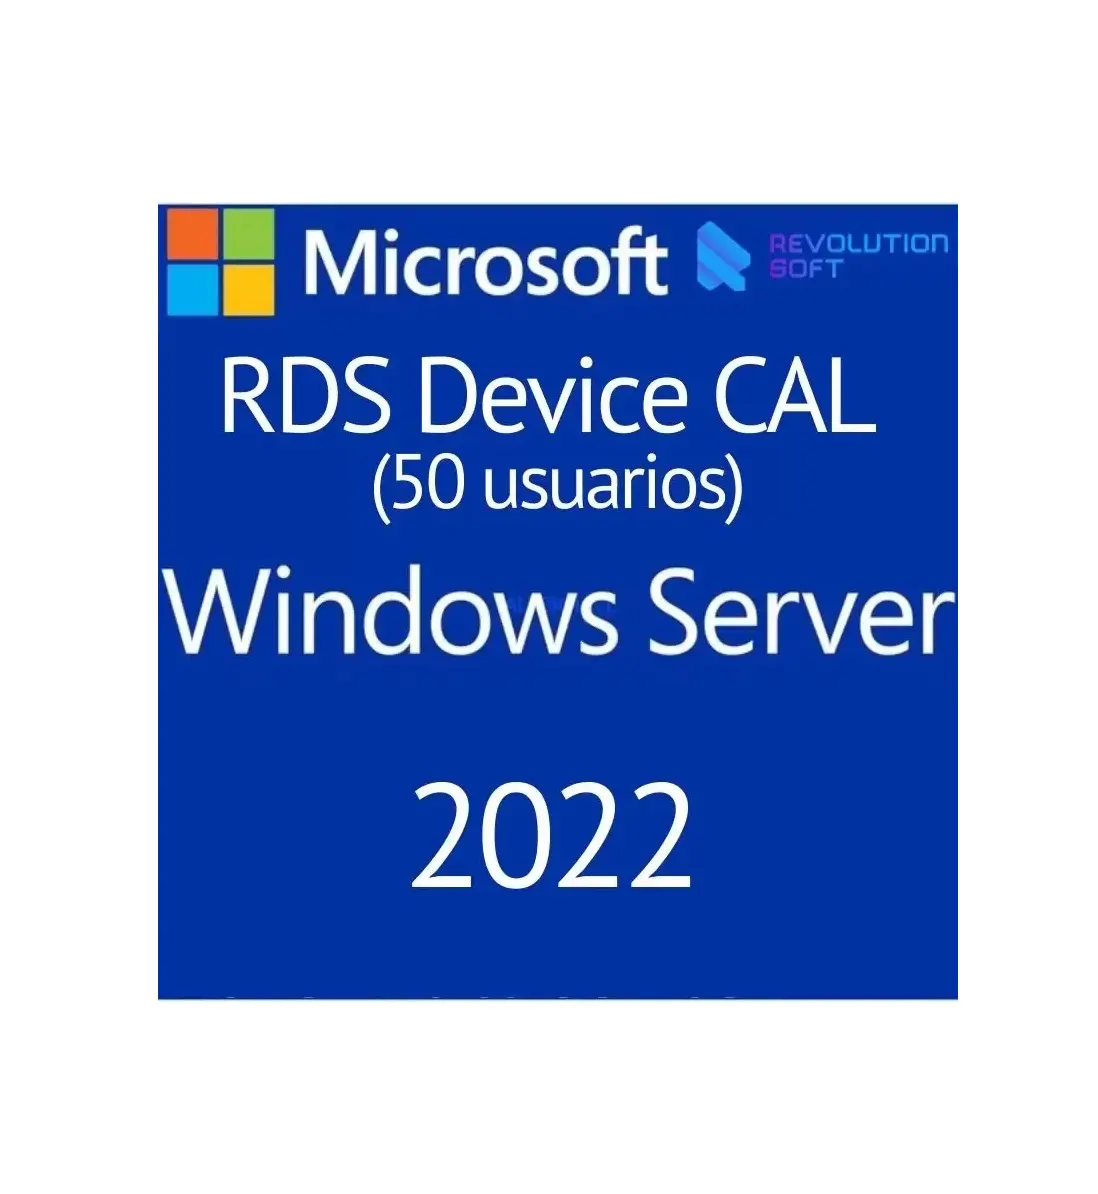 마이크로 소프트 윈도우 서버 2022 RDS CAL 원격 데스크톱 서비스 장치 연결 50 장치 혁명 소프트